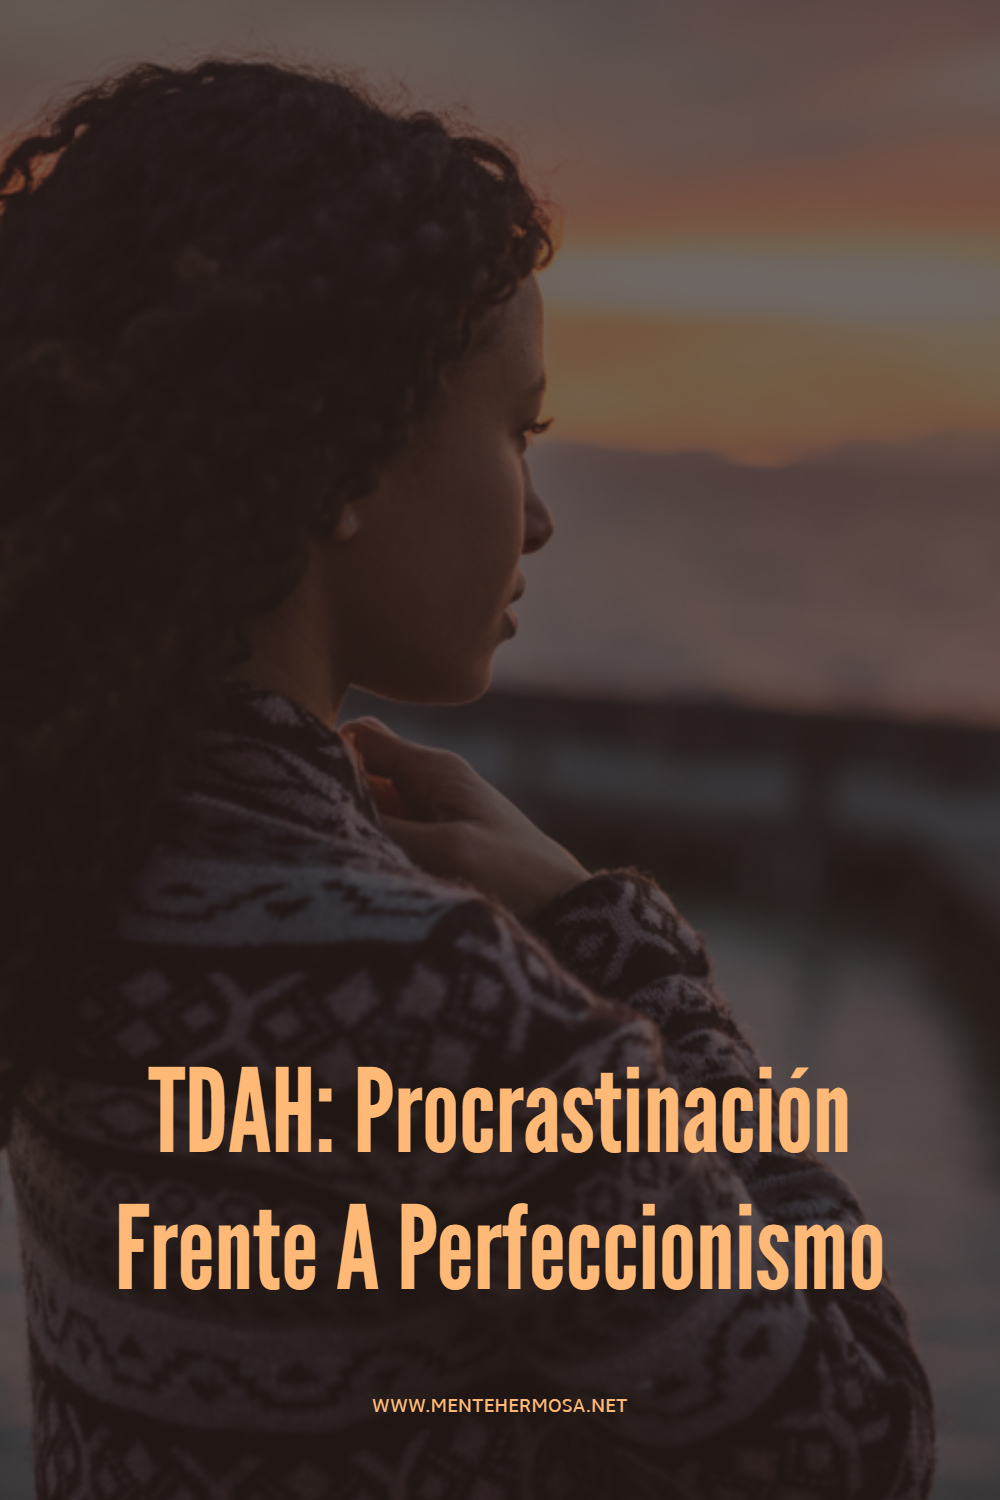 TDAH: Procrastinación Frente A Perfeccionismo